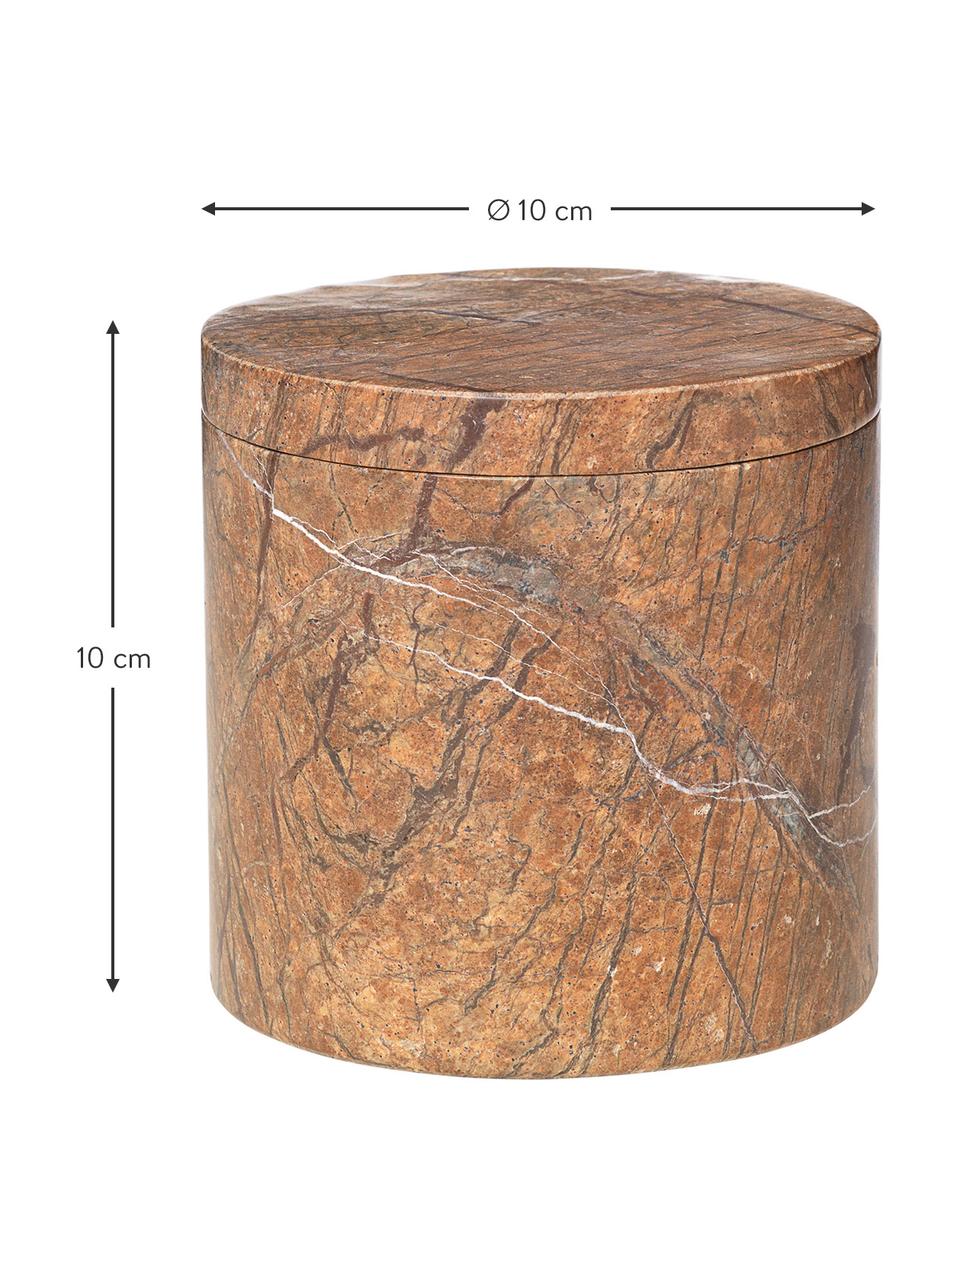 Marmor-Aufbewahrungsdose Osvald in Braun, Marmor

Marmor ist ein Naturgestein und ist daher in seiner Maserung einzigartig. Jedes Produkt ist ein Unikat, Brauner Marmor, Ø 10 x H 10 cm